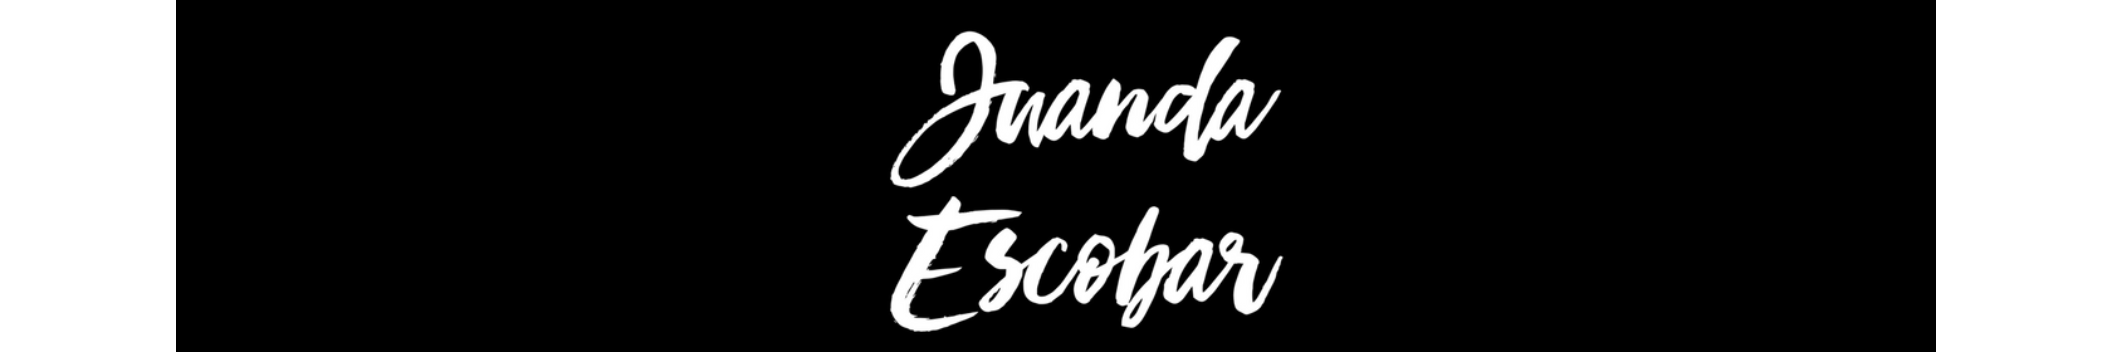 Juanda Escobar